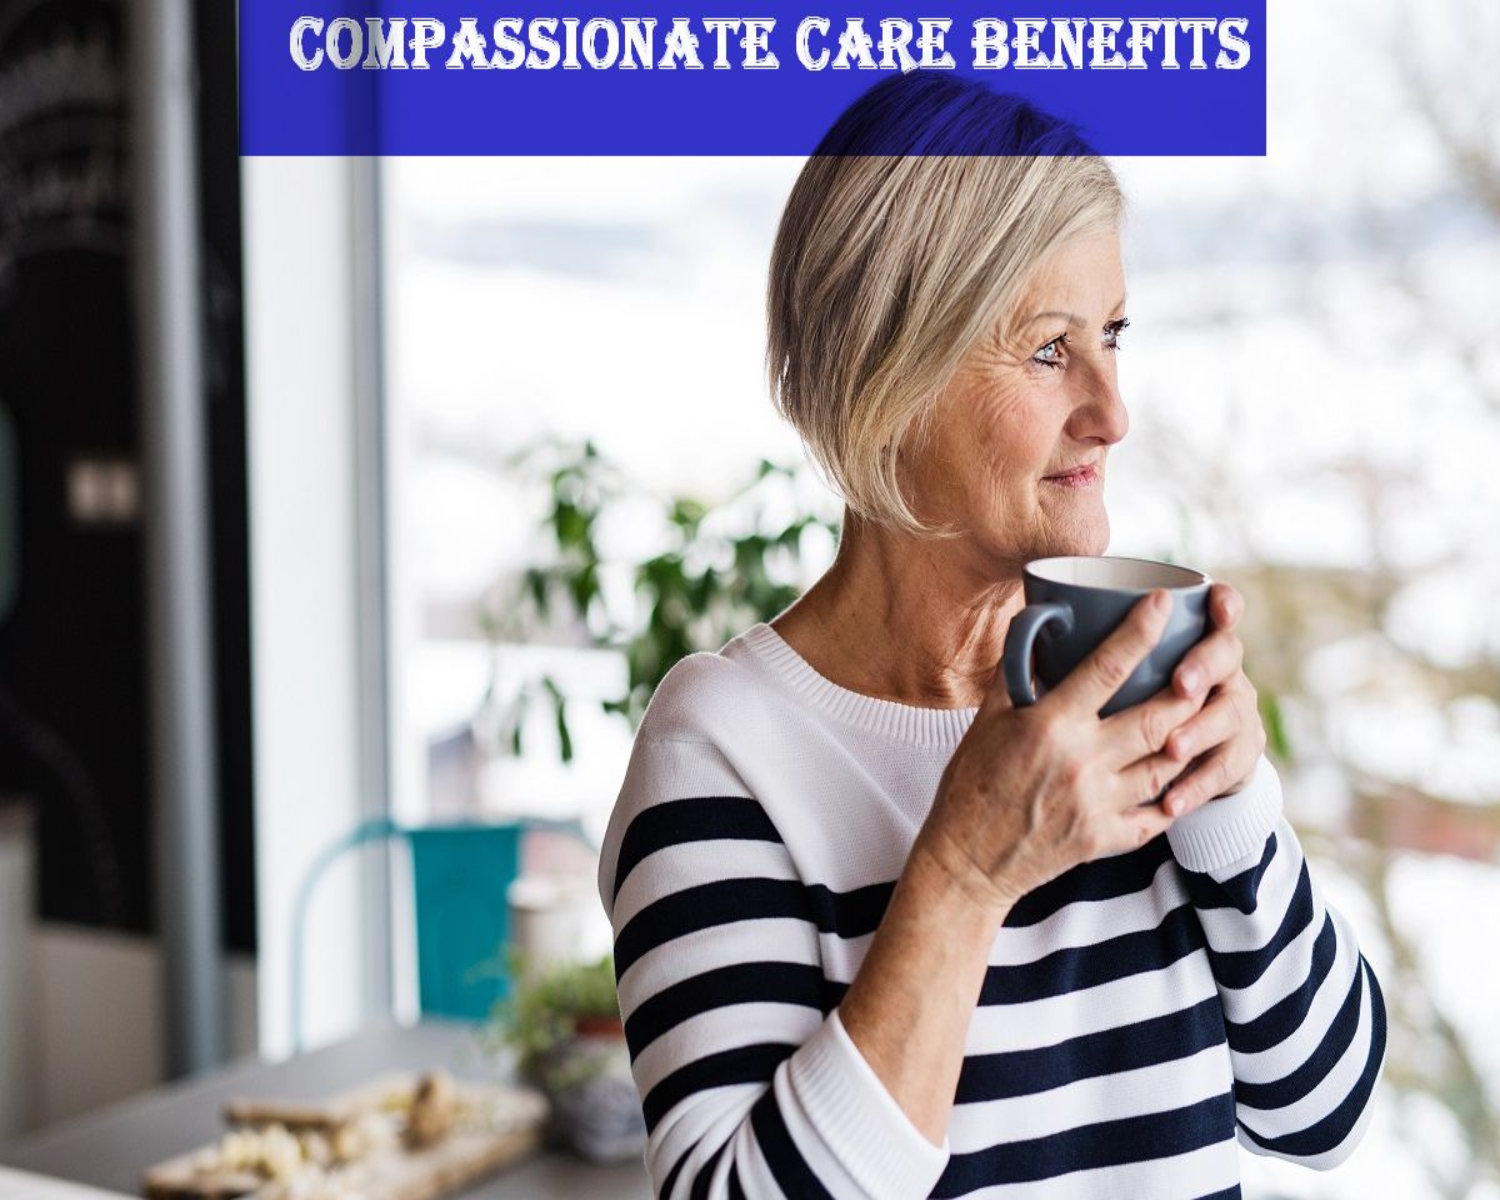 Compassionate Care Benefits in Canada